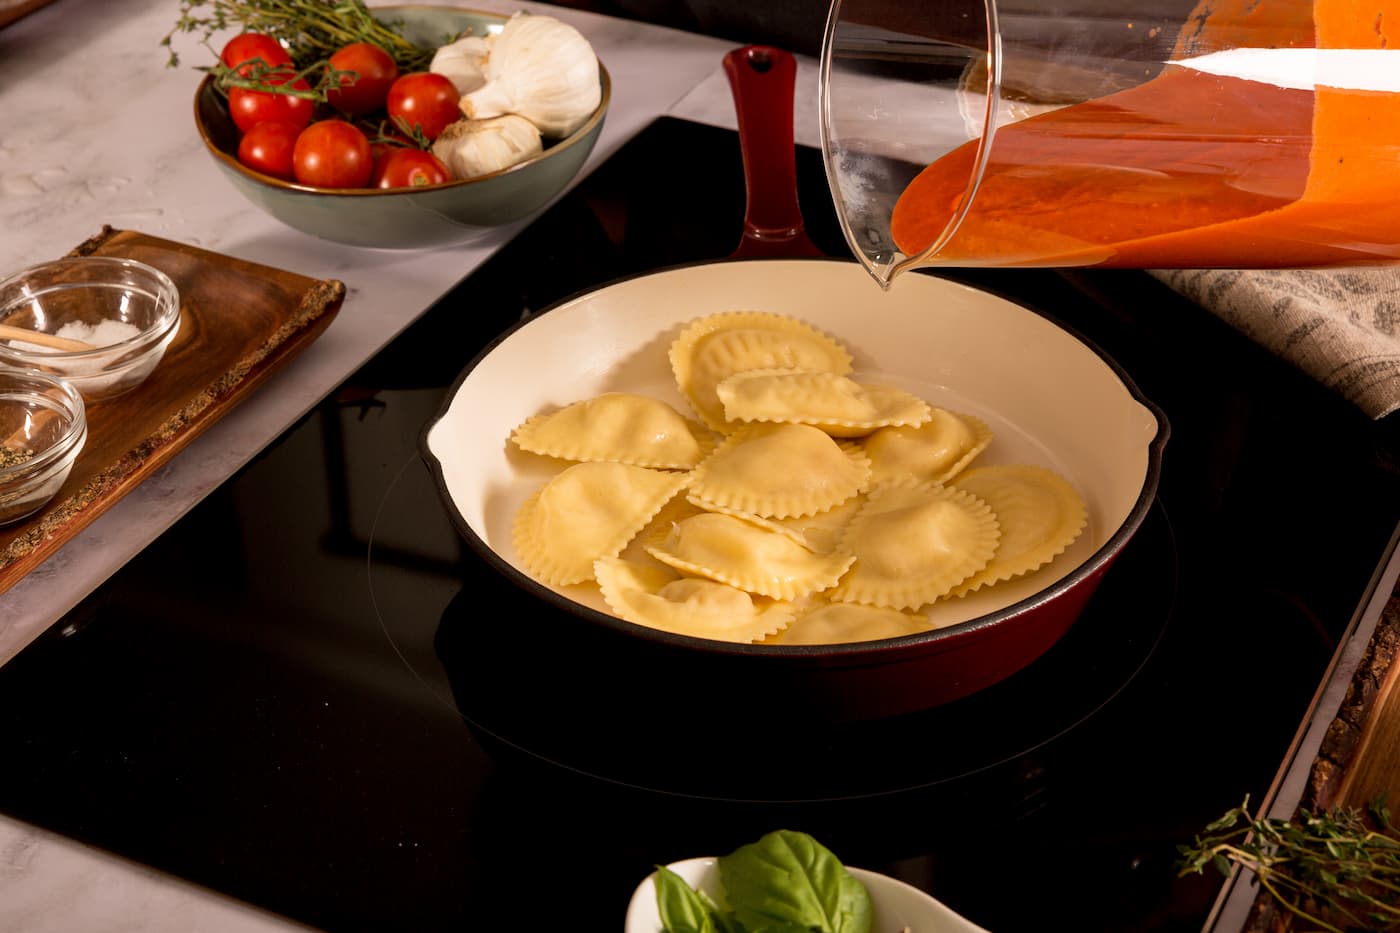 Receta Mezzelune Prosciutto Di Parma y Parmigiano Reggiano con Salsa de Pimientos Asados y Burrata. Paso 5: mezclamos con la salsa de pimientos rojos asados